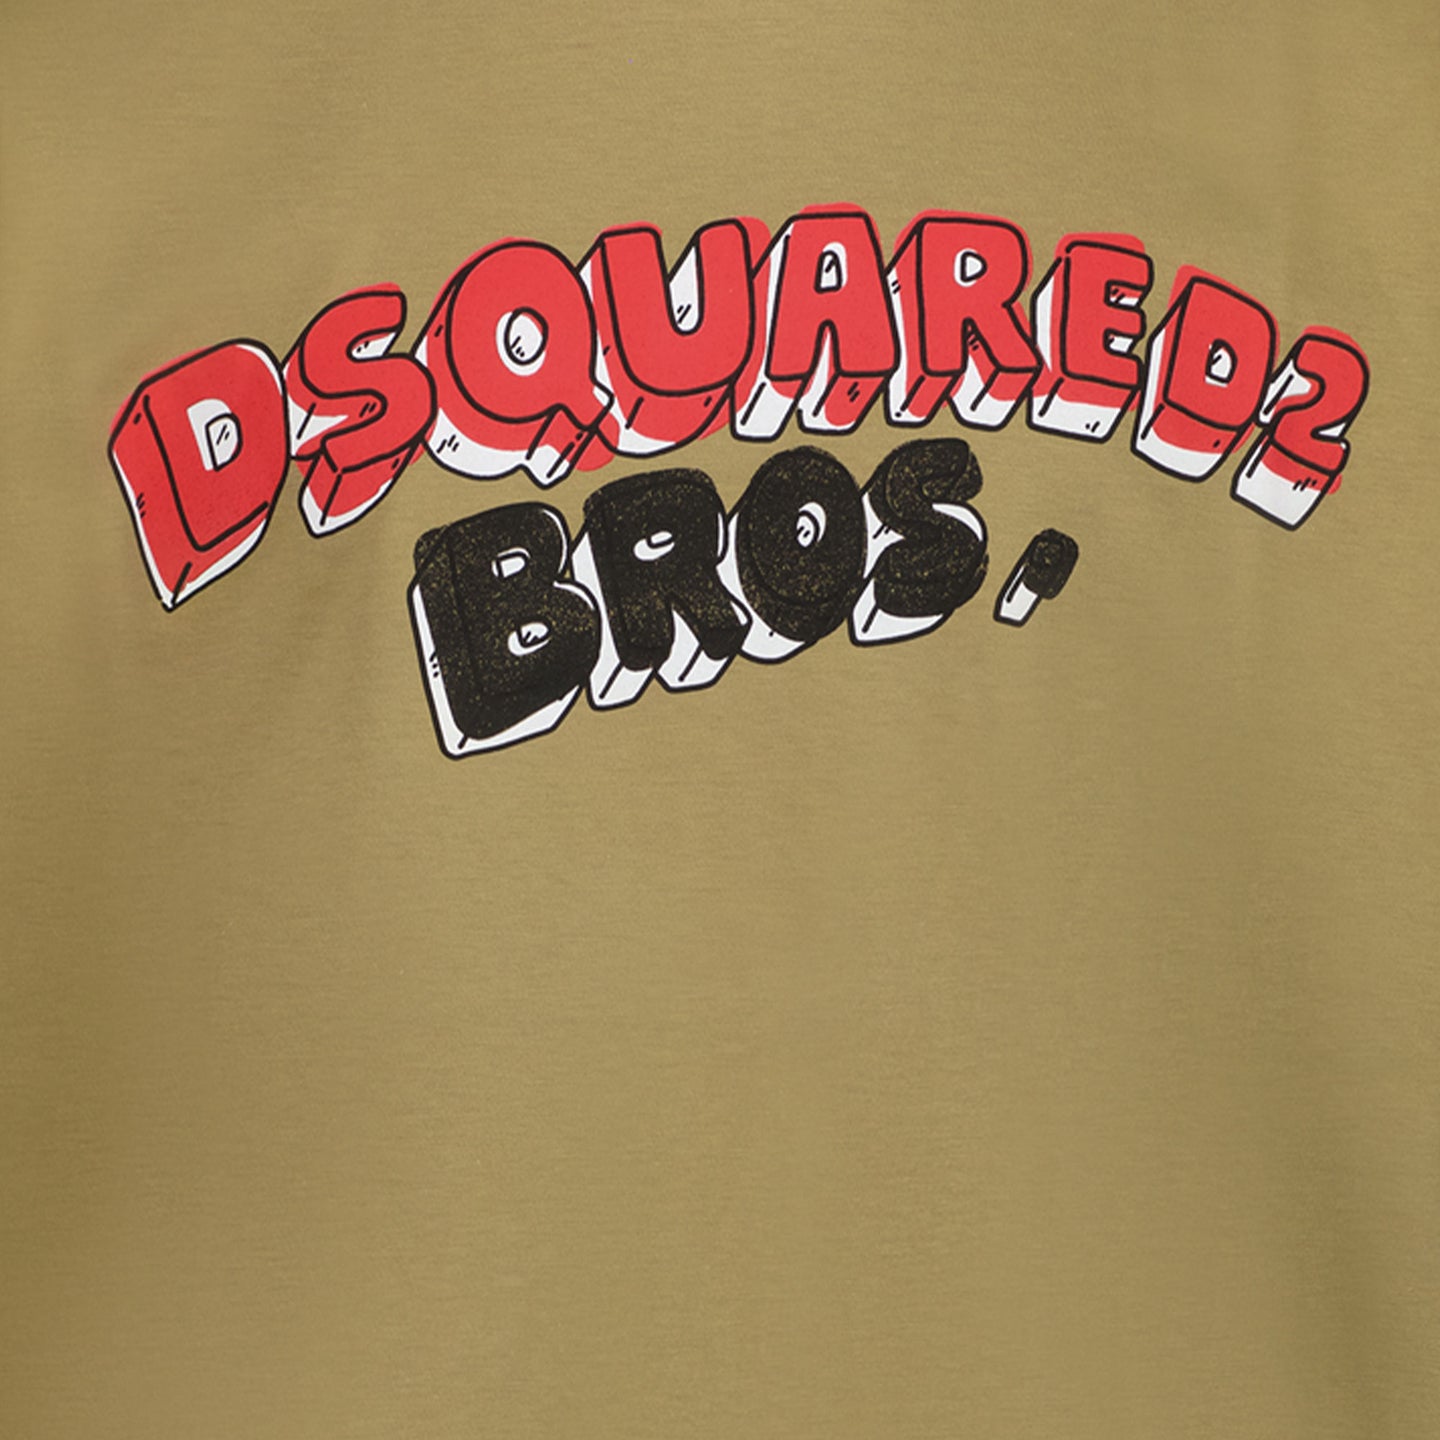 Dsquared2 T-shirt chłopców armia